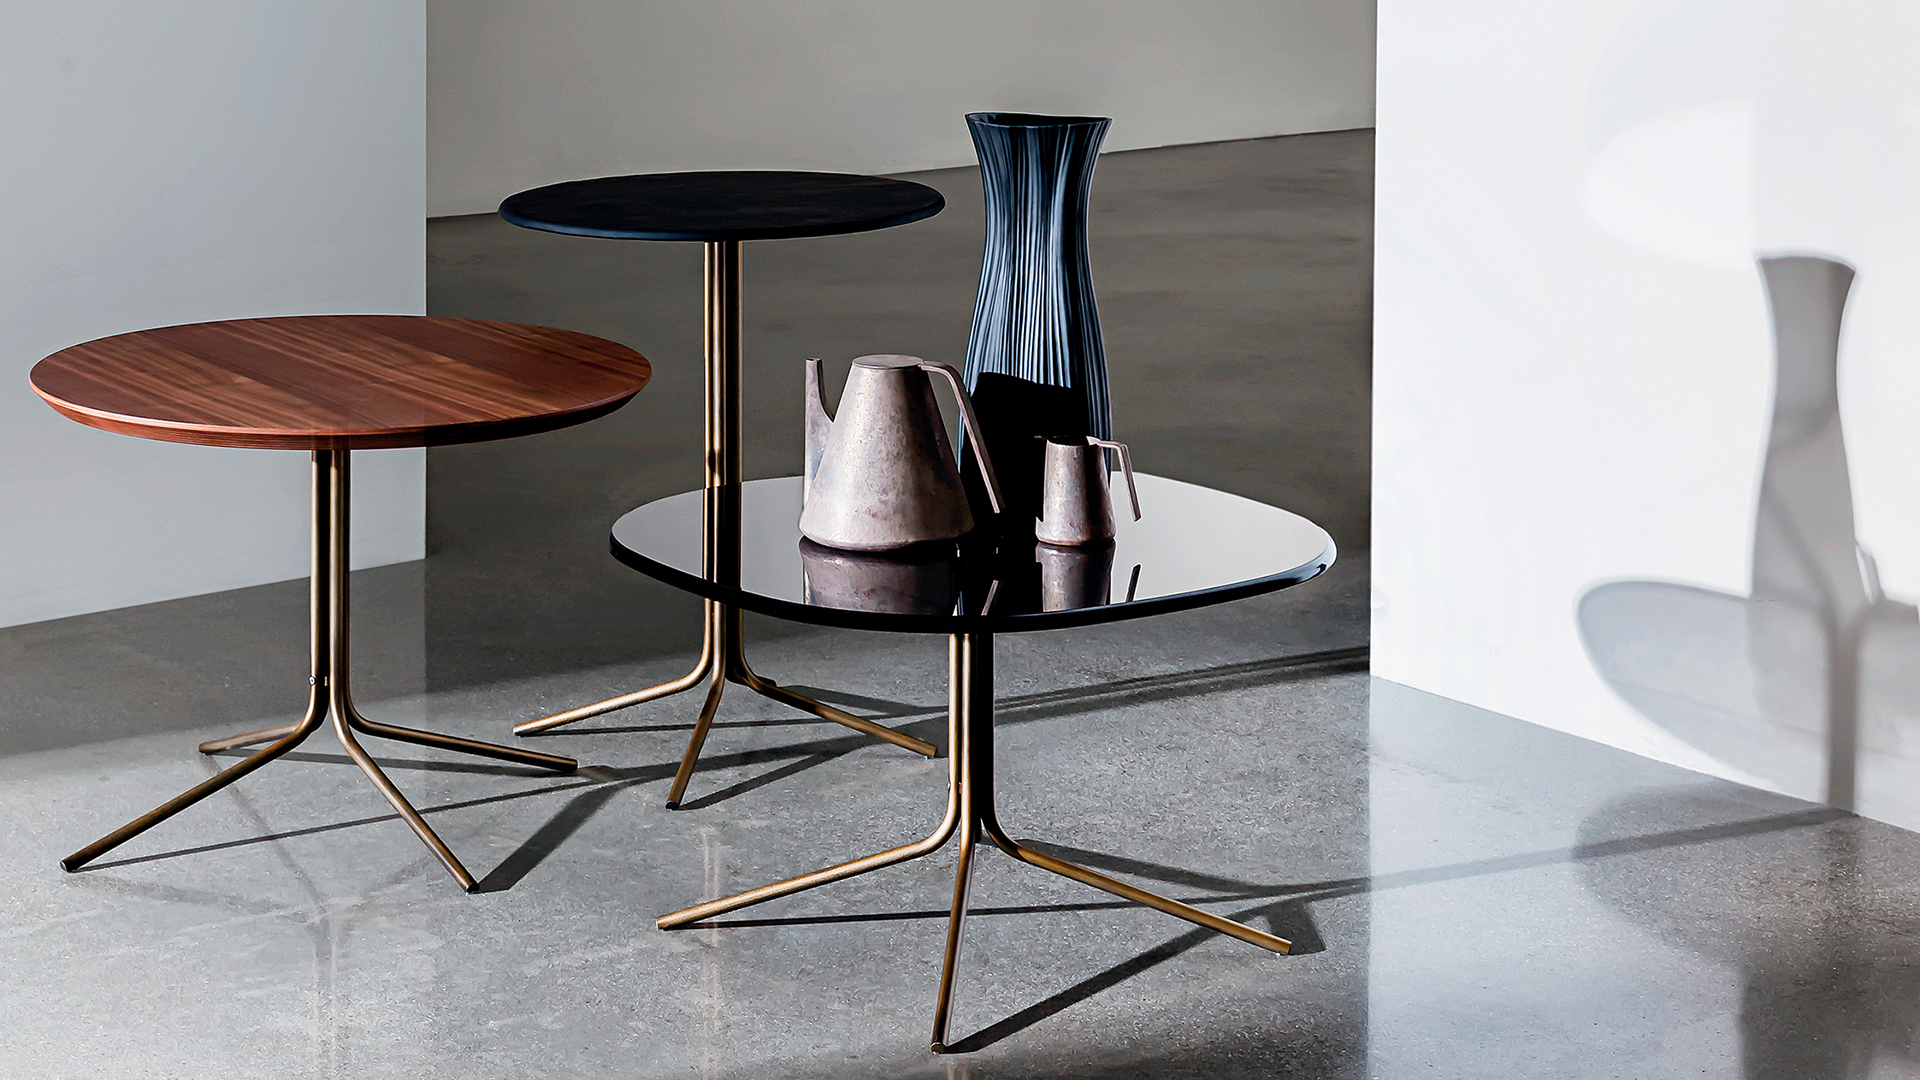 Tre tavolini rotondi in diverse altezze con base in metallo brunito e piano legno noce canaletto, ceramica colore nero e vetro colore nero